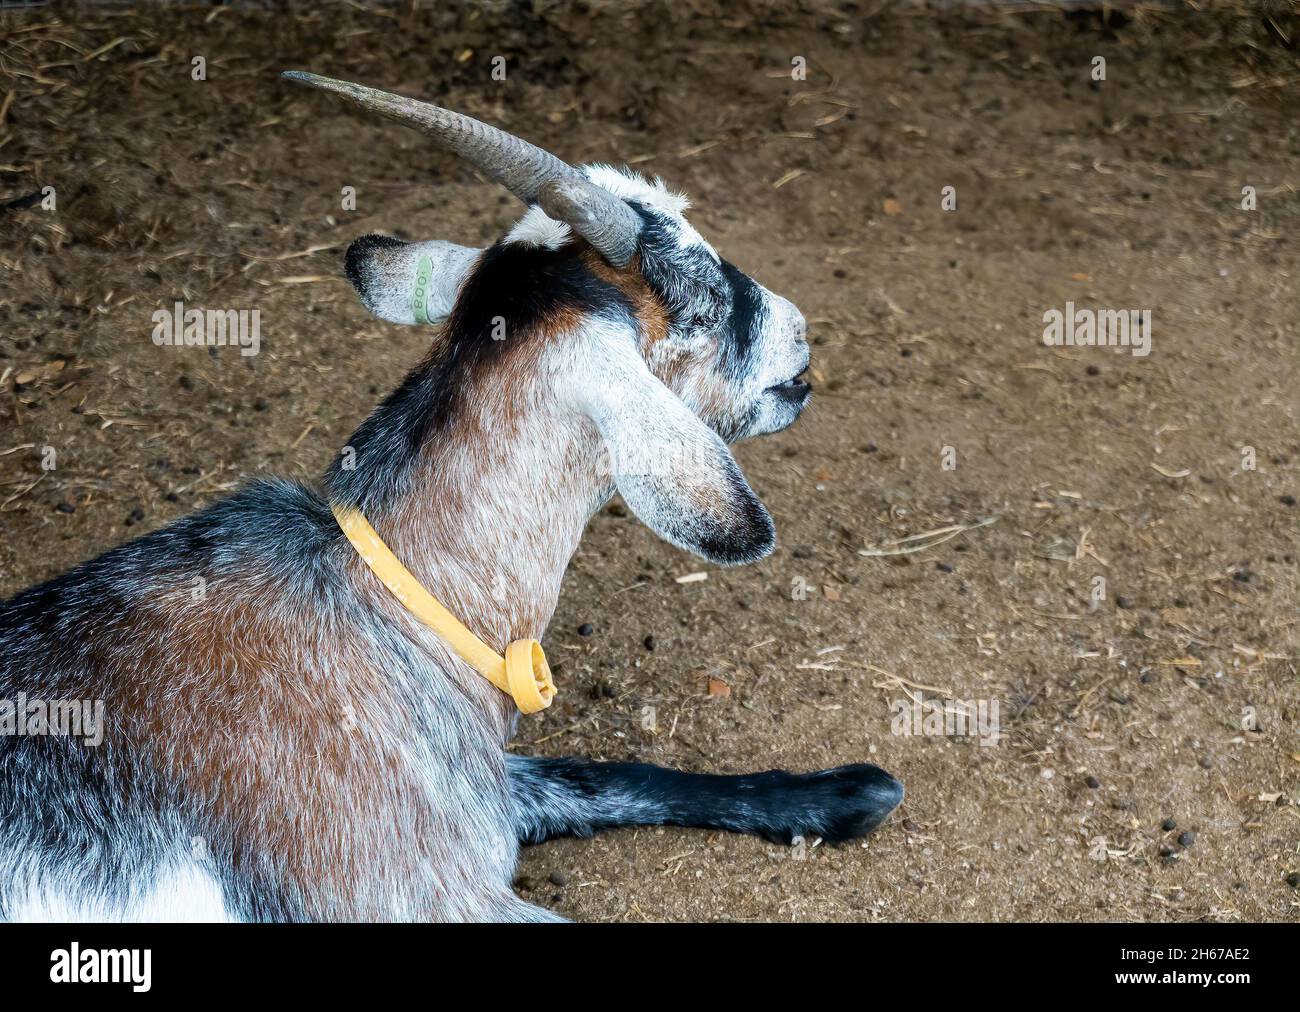 Une chèvre billy reposant sur la terre portant son collier d'identification  Photo Stock - Alamy